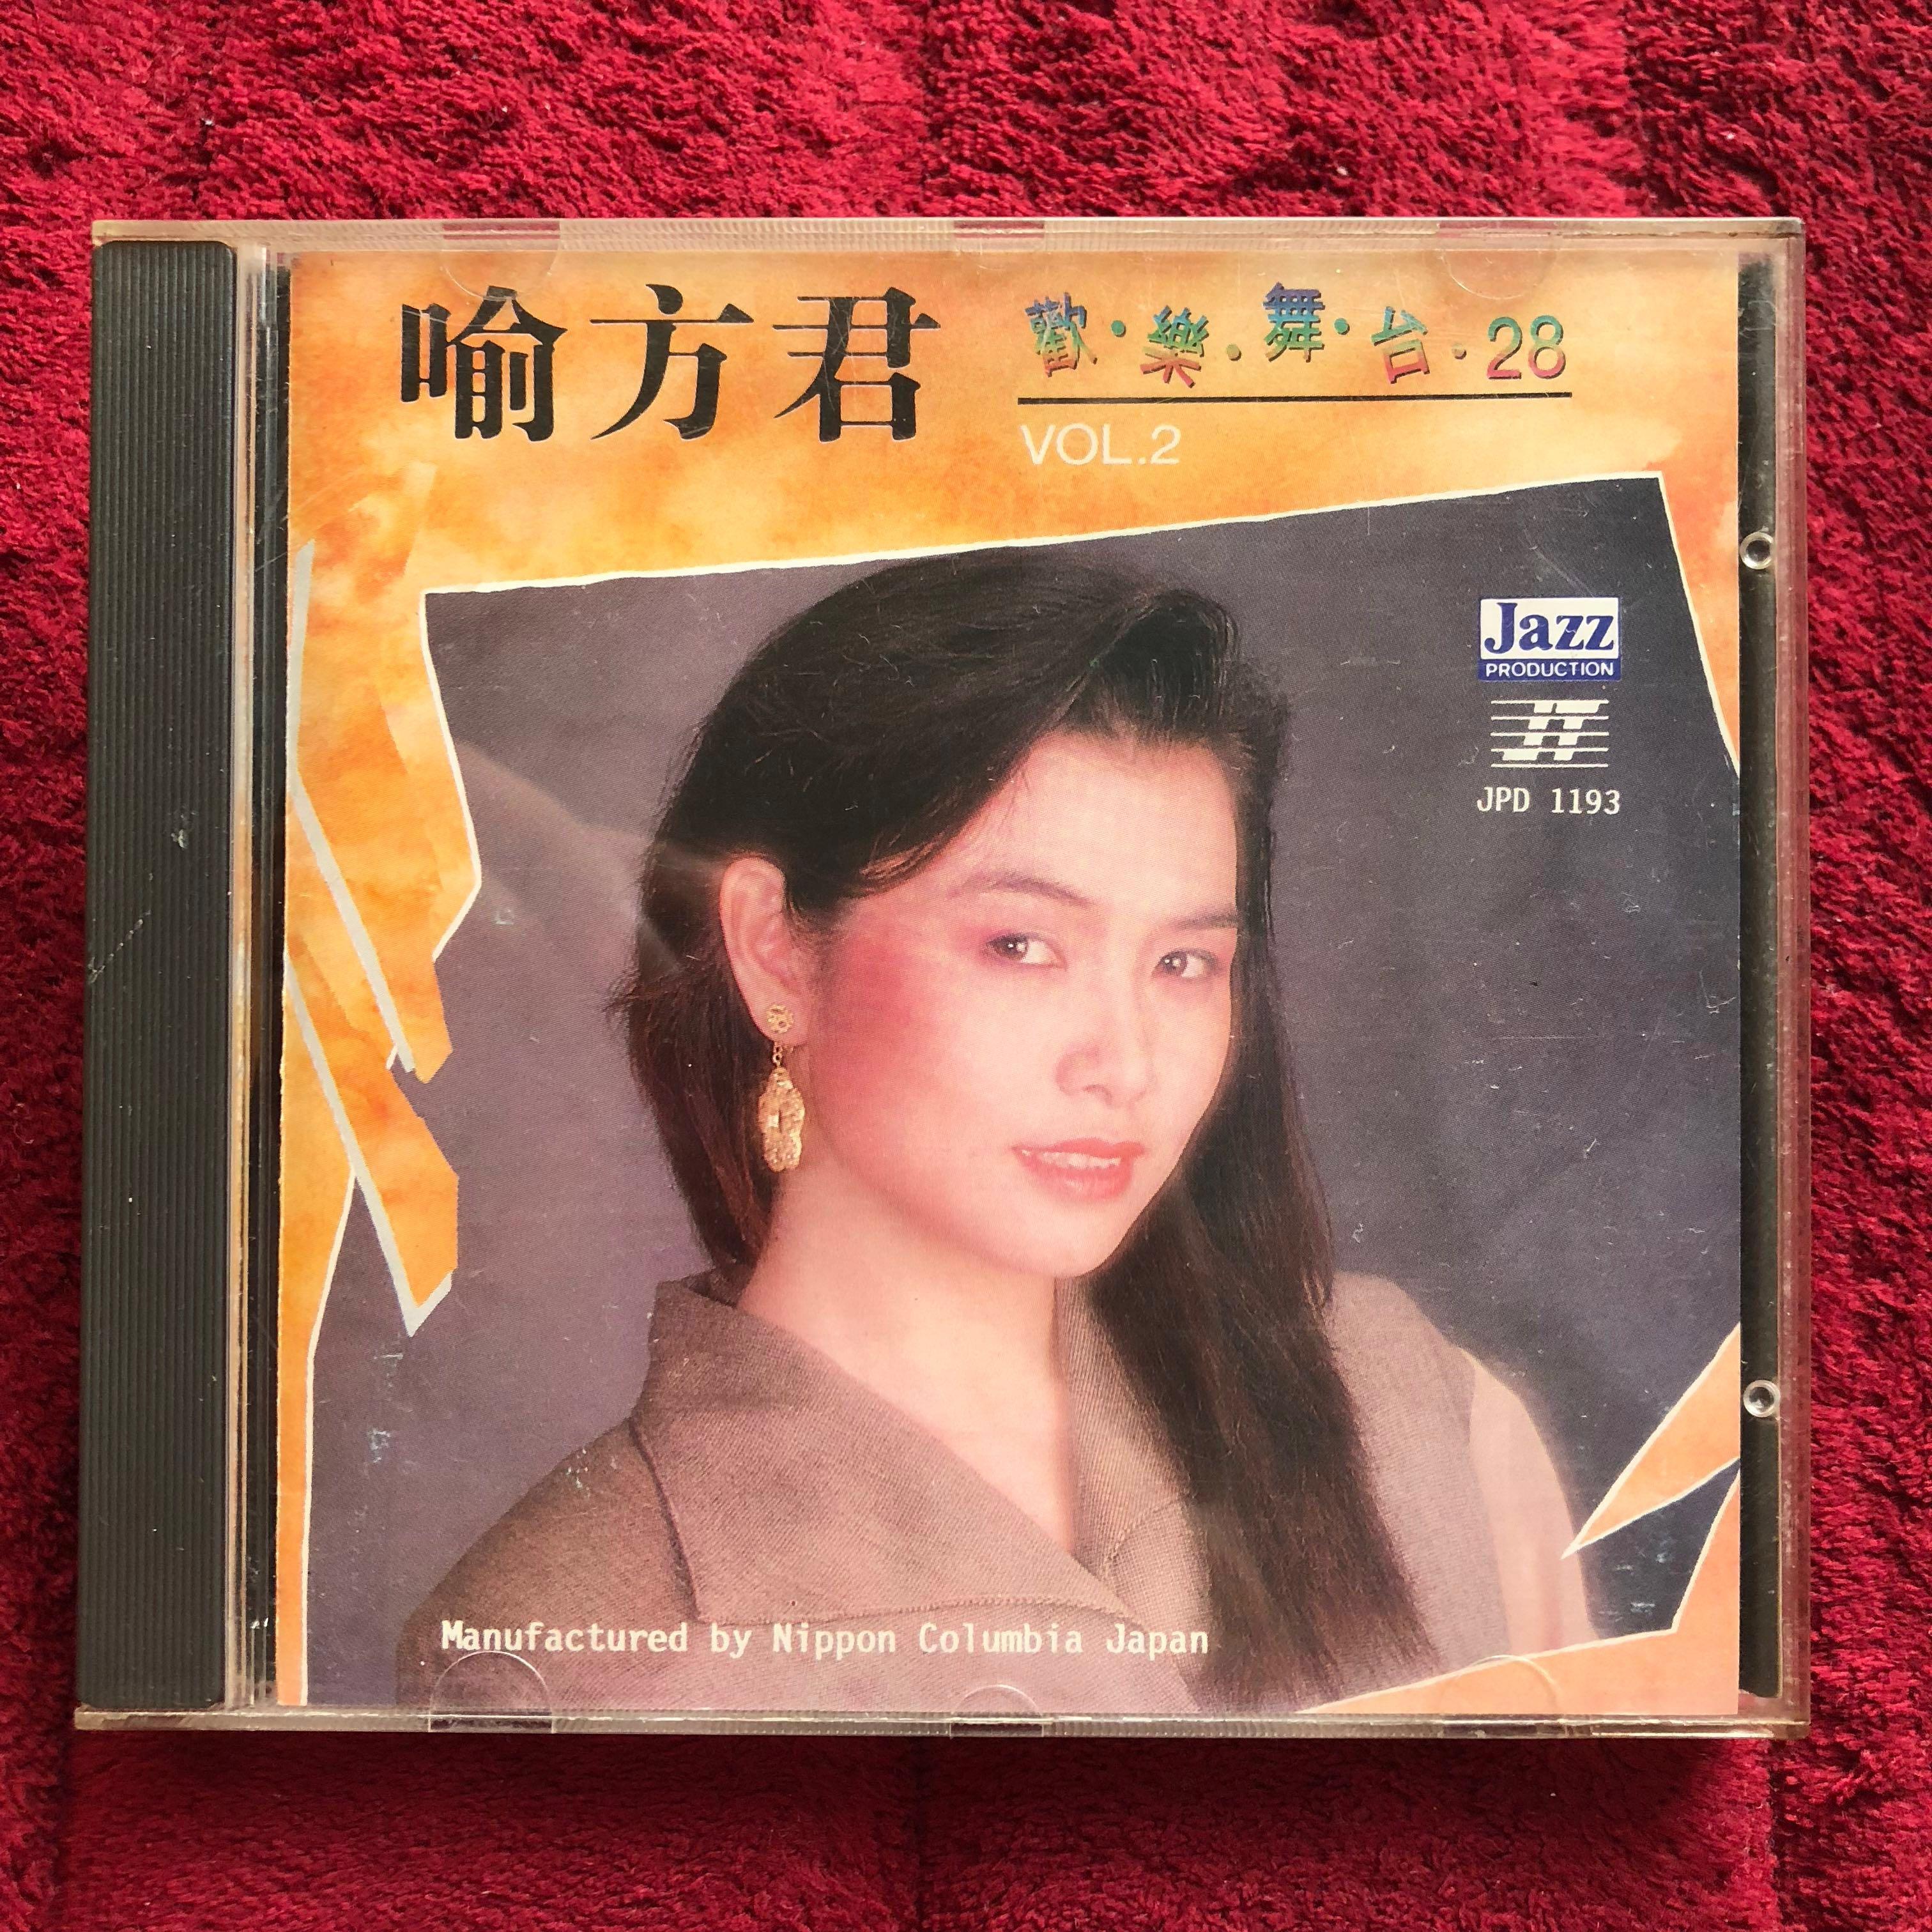 注目のブランド □ JIEFANG DAILY 解放日報 CD-ROM 4枚組 1998年